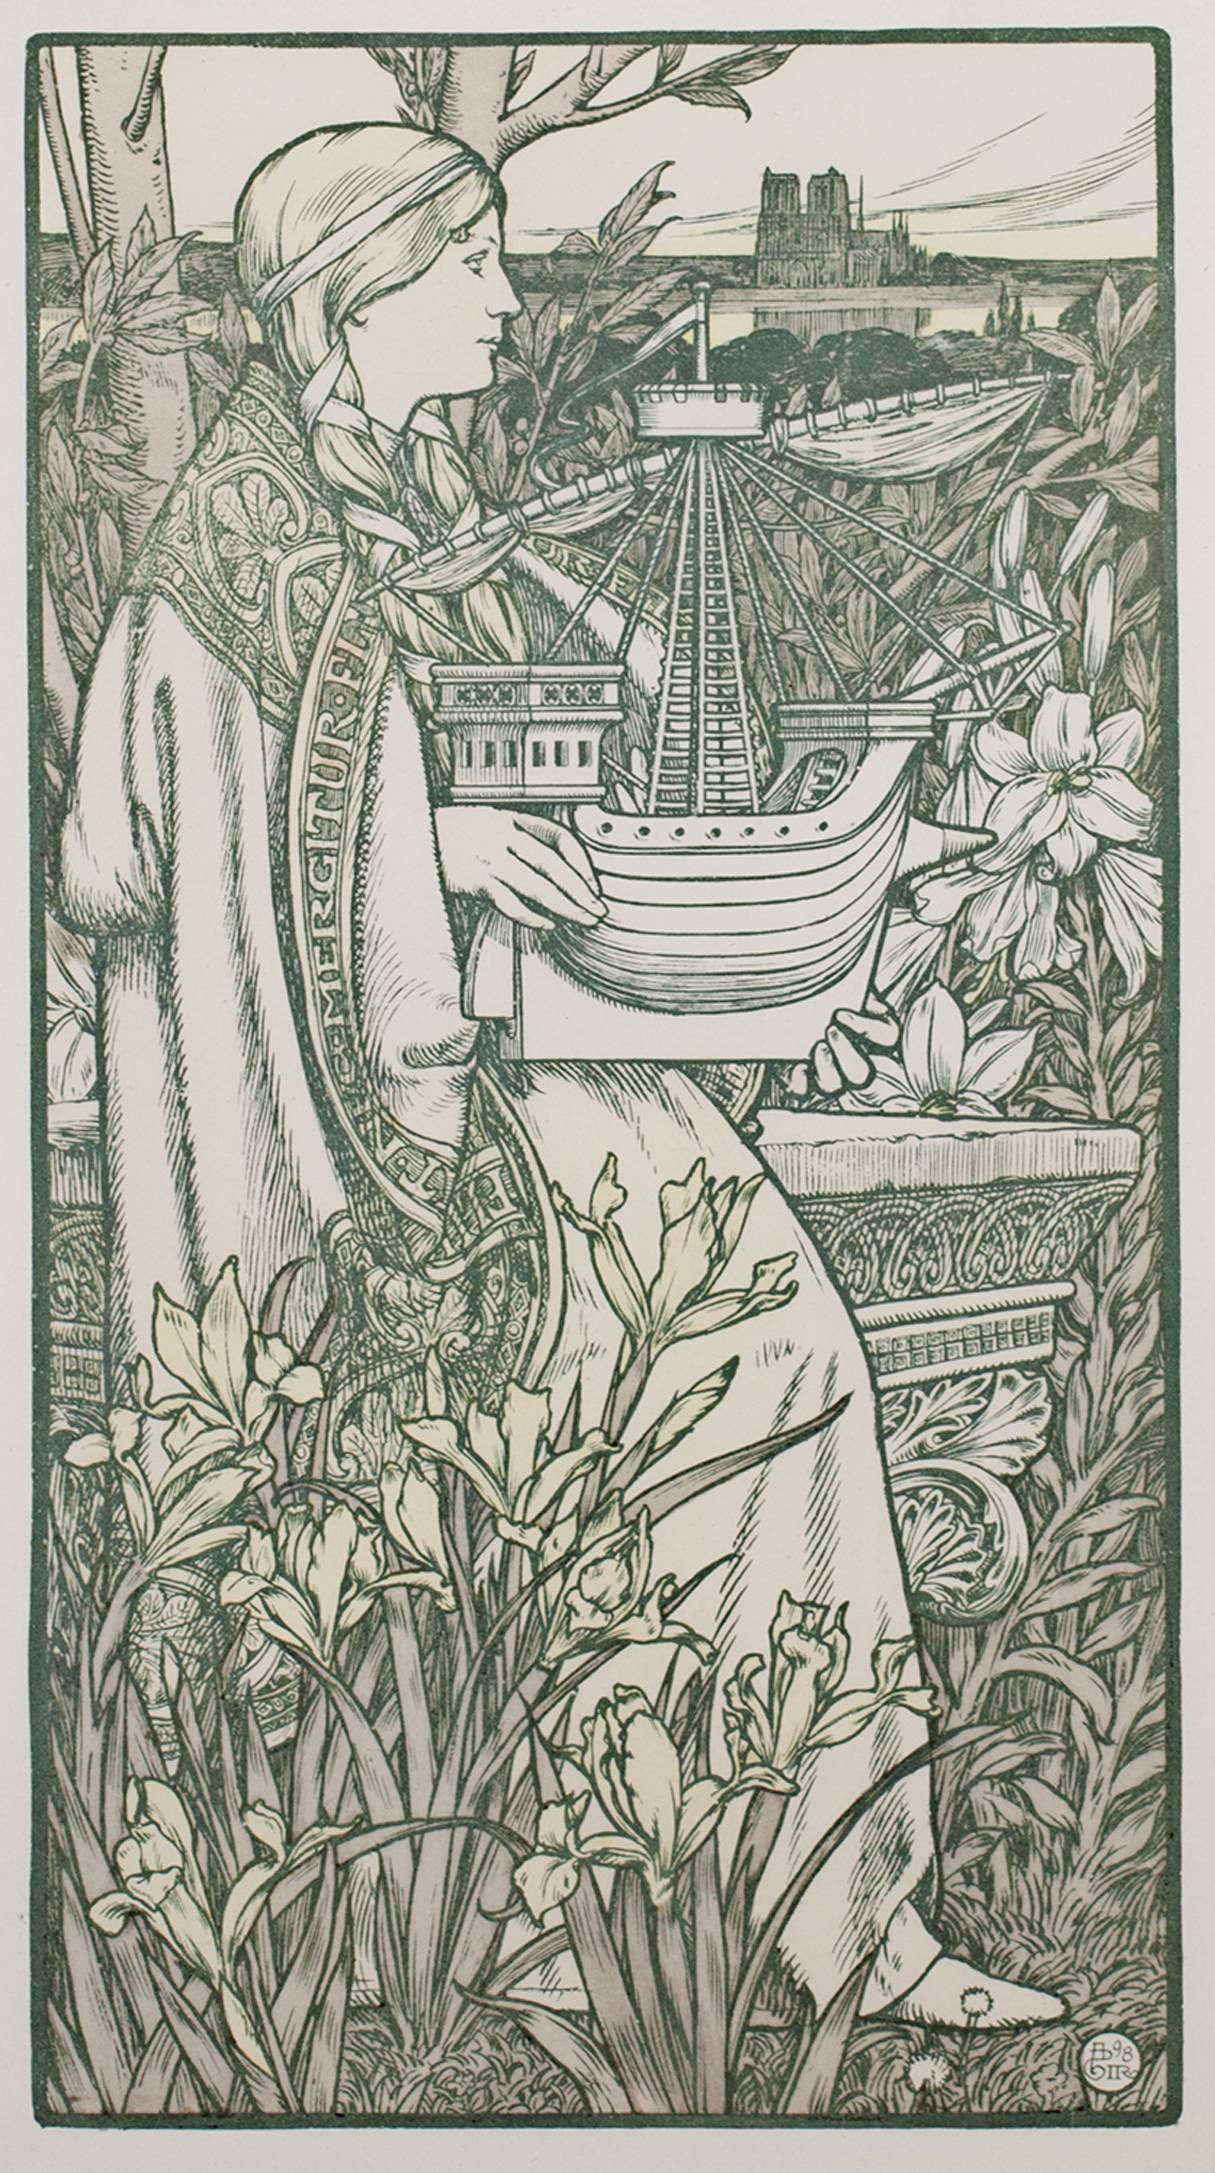 "Lutece" est une lithographie originale en couleurs d'Adolphe Giraldon. Cette pièce représente une femme tenant un voilier au milieu d'une végétation luxuriante. En arrière-plan, Notre Dame s'élève. Lutèce est le nom français de l'ancienne ville